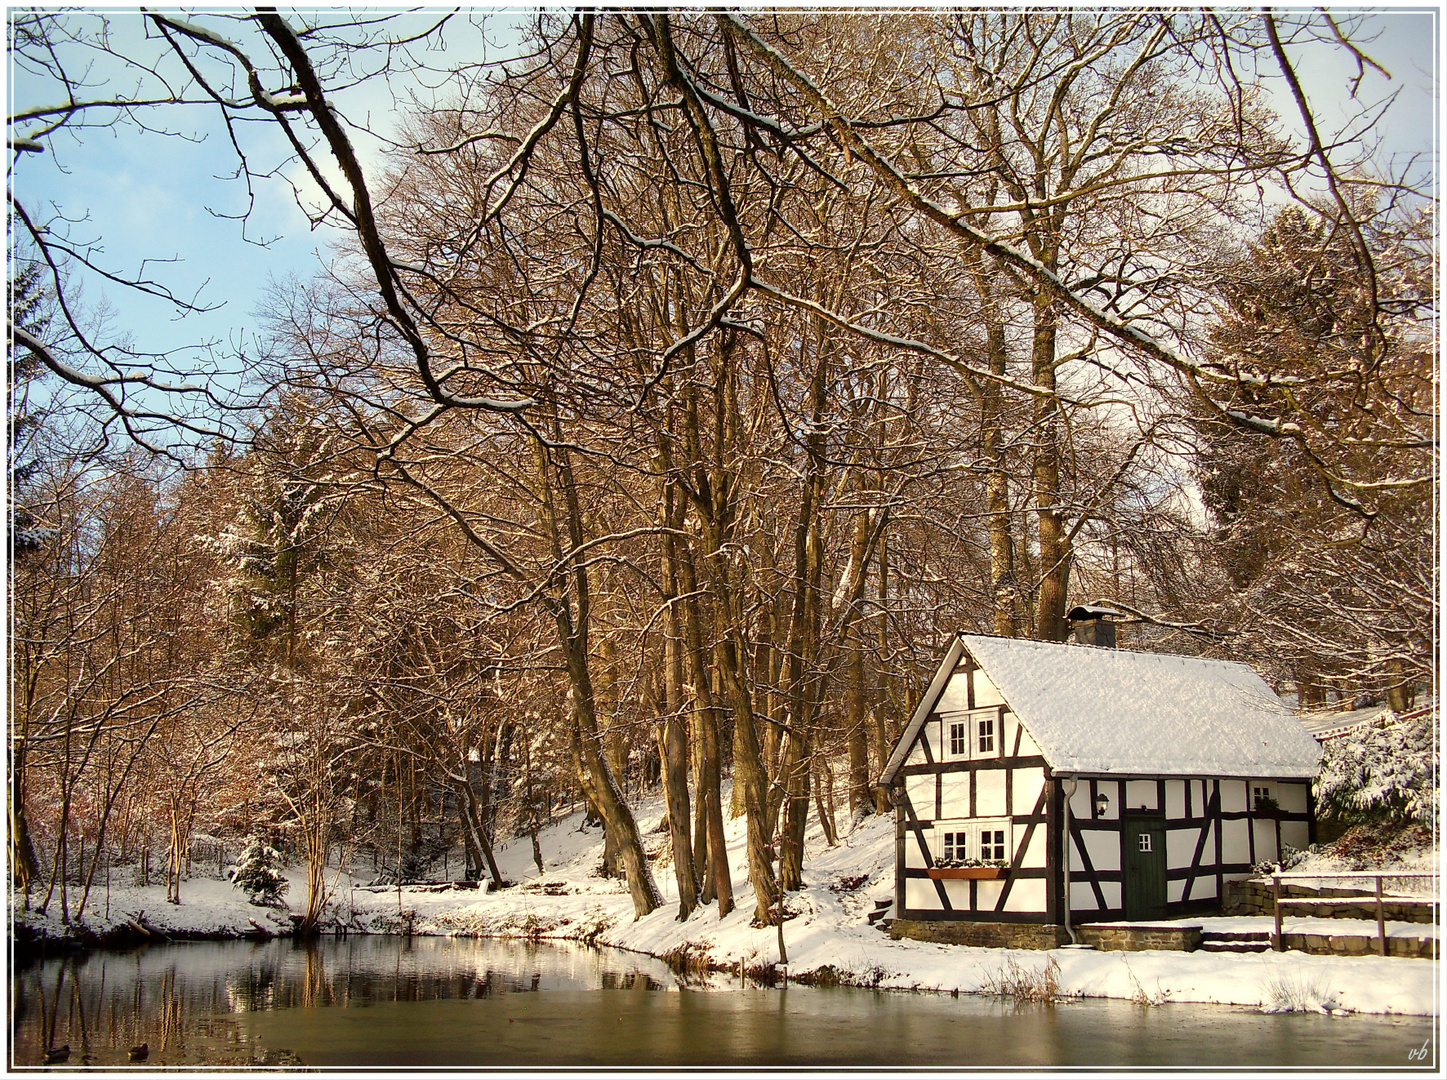 Backes von Oberholzklau im Winter (Bild aus Wikipedia)